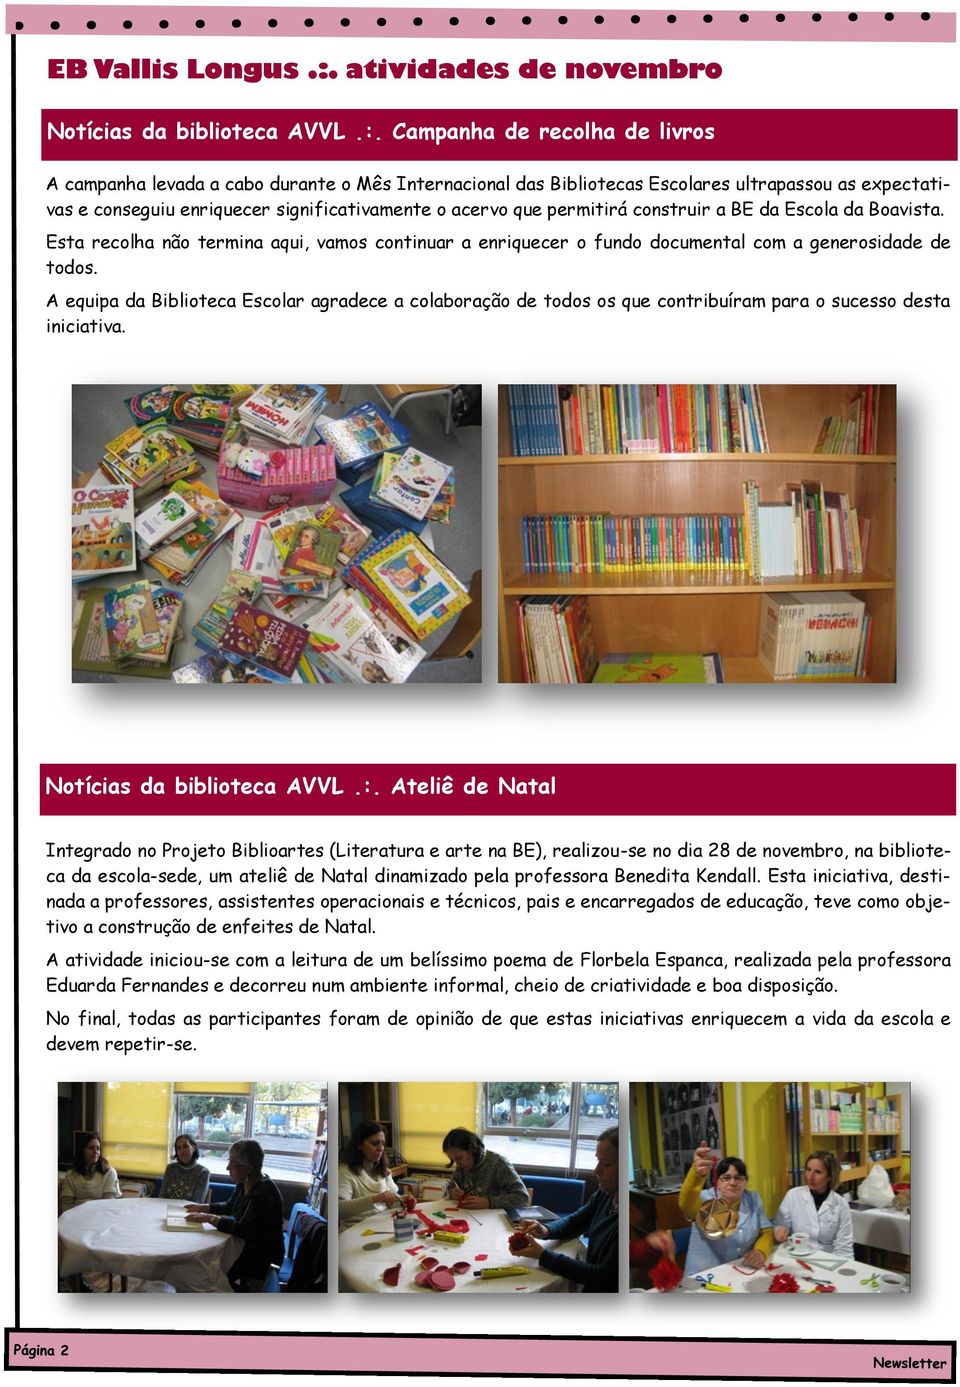 Campanha de recolha de livros A campanha levada a cabo durante o Mês Internacional das Bibliotecas Escolares ultrapassou as expectativas e conseguiu enriquecer significativamente o acervo que